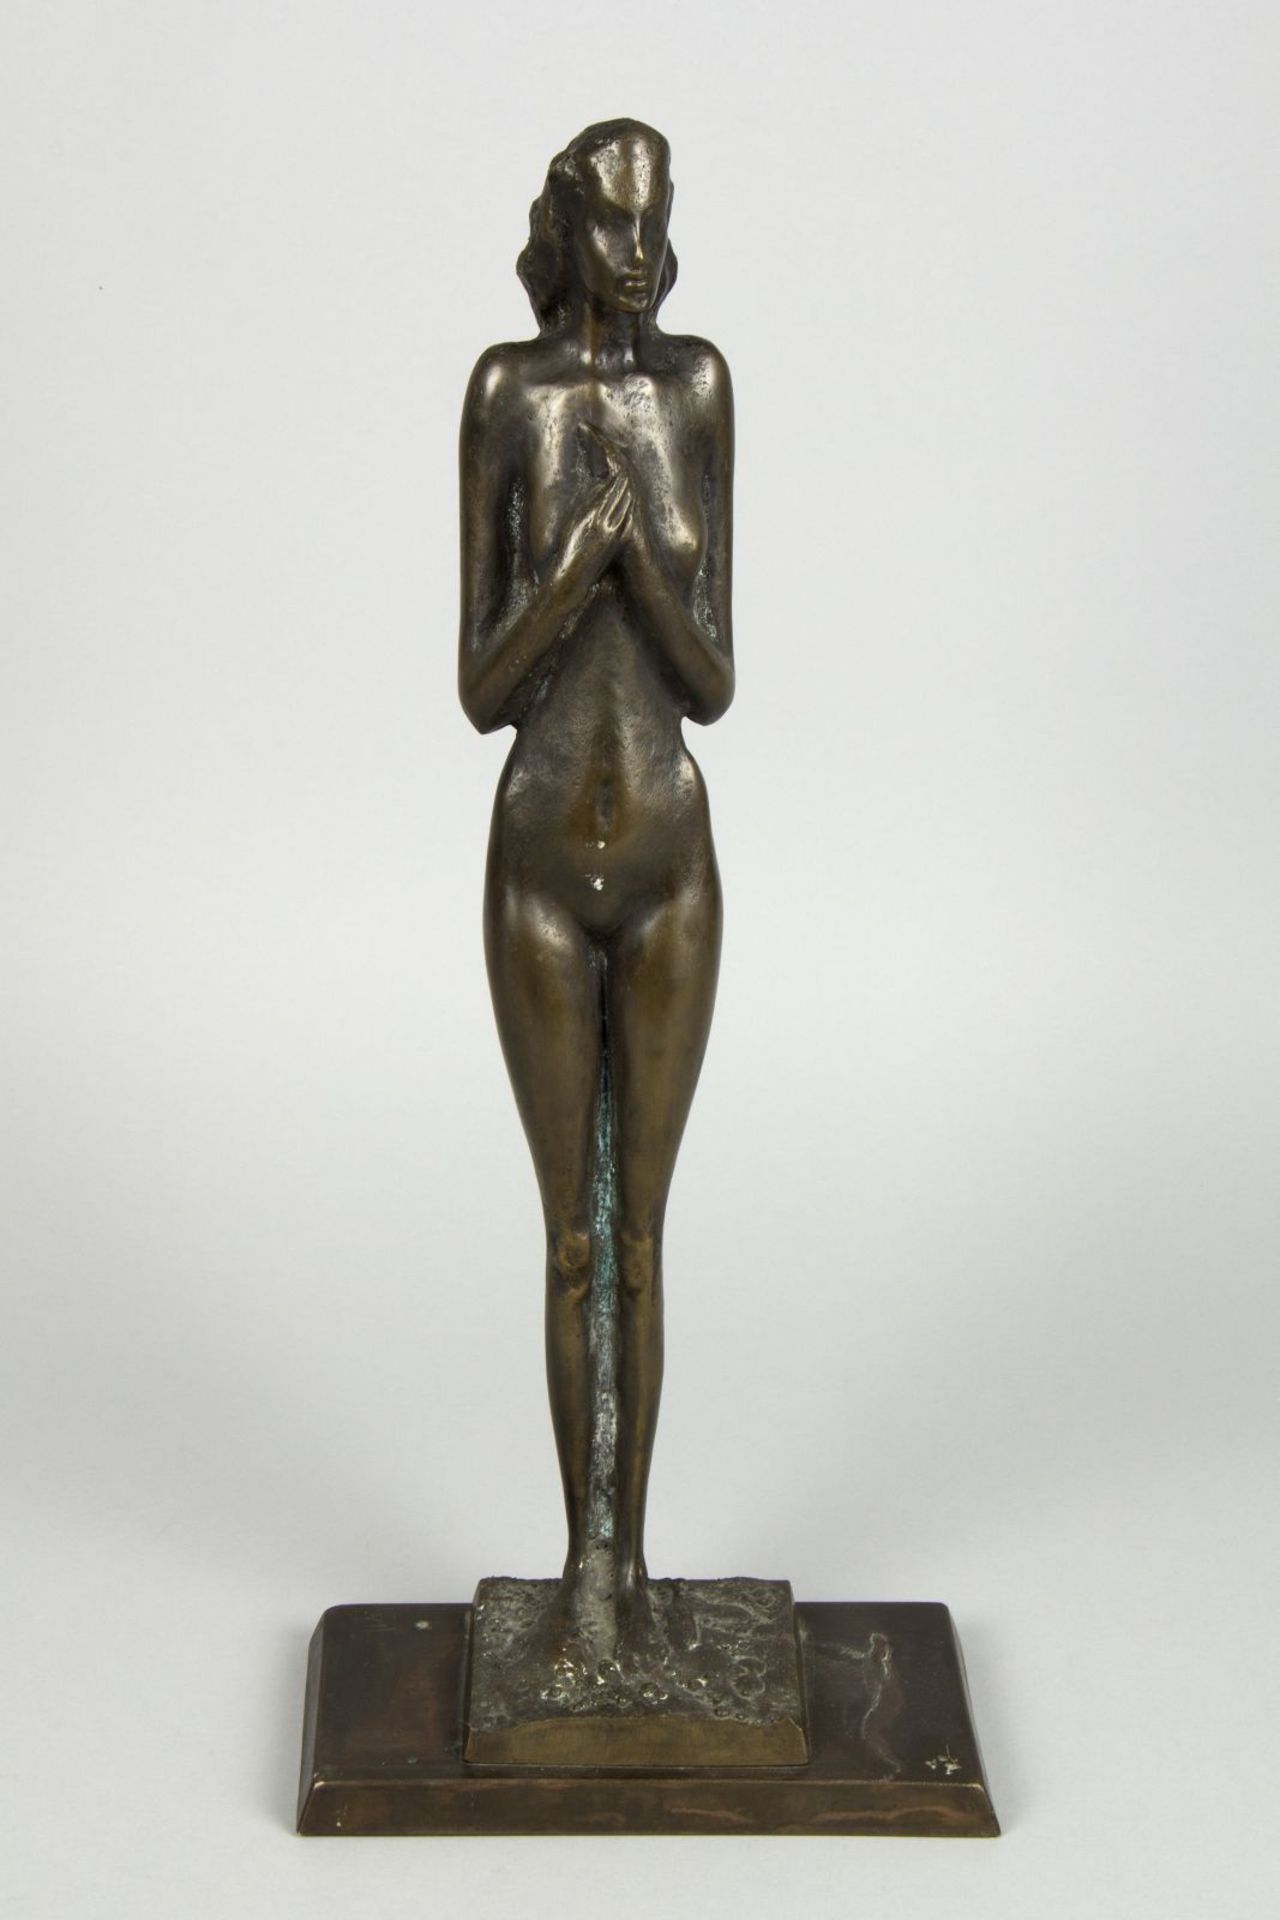 Mitkov, Boyko. 1954 StudenaStehender weiblicher Akt. Bronze, grün-schwarz patiniert. H. 51 cm. Auf